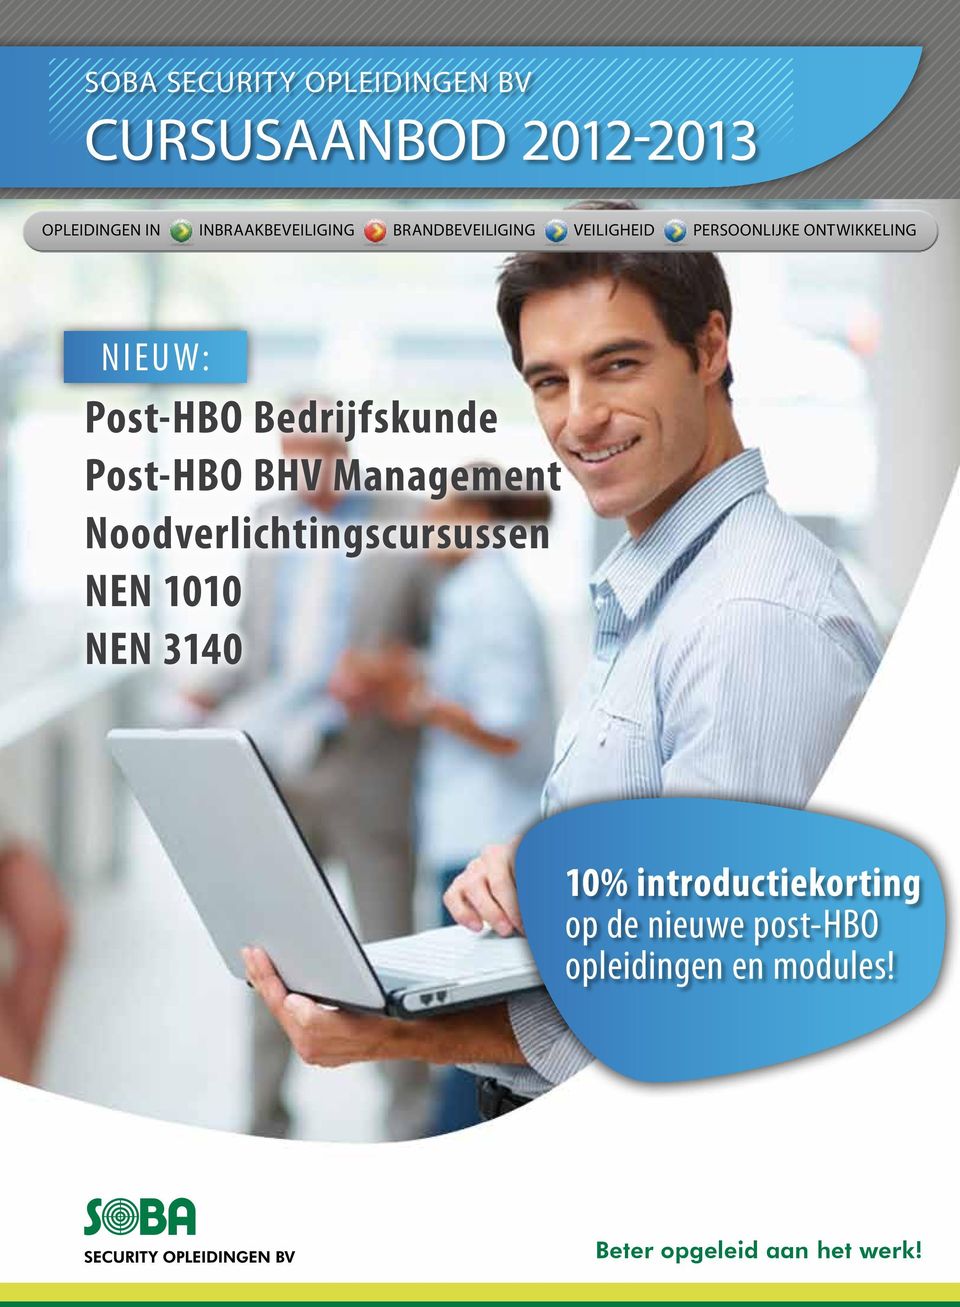 Bedrijfskunde Post-HBO BHV Management Noodverlichtingscursussen NEN 1010 NEN 3140 10%